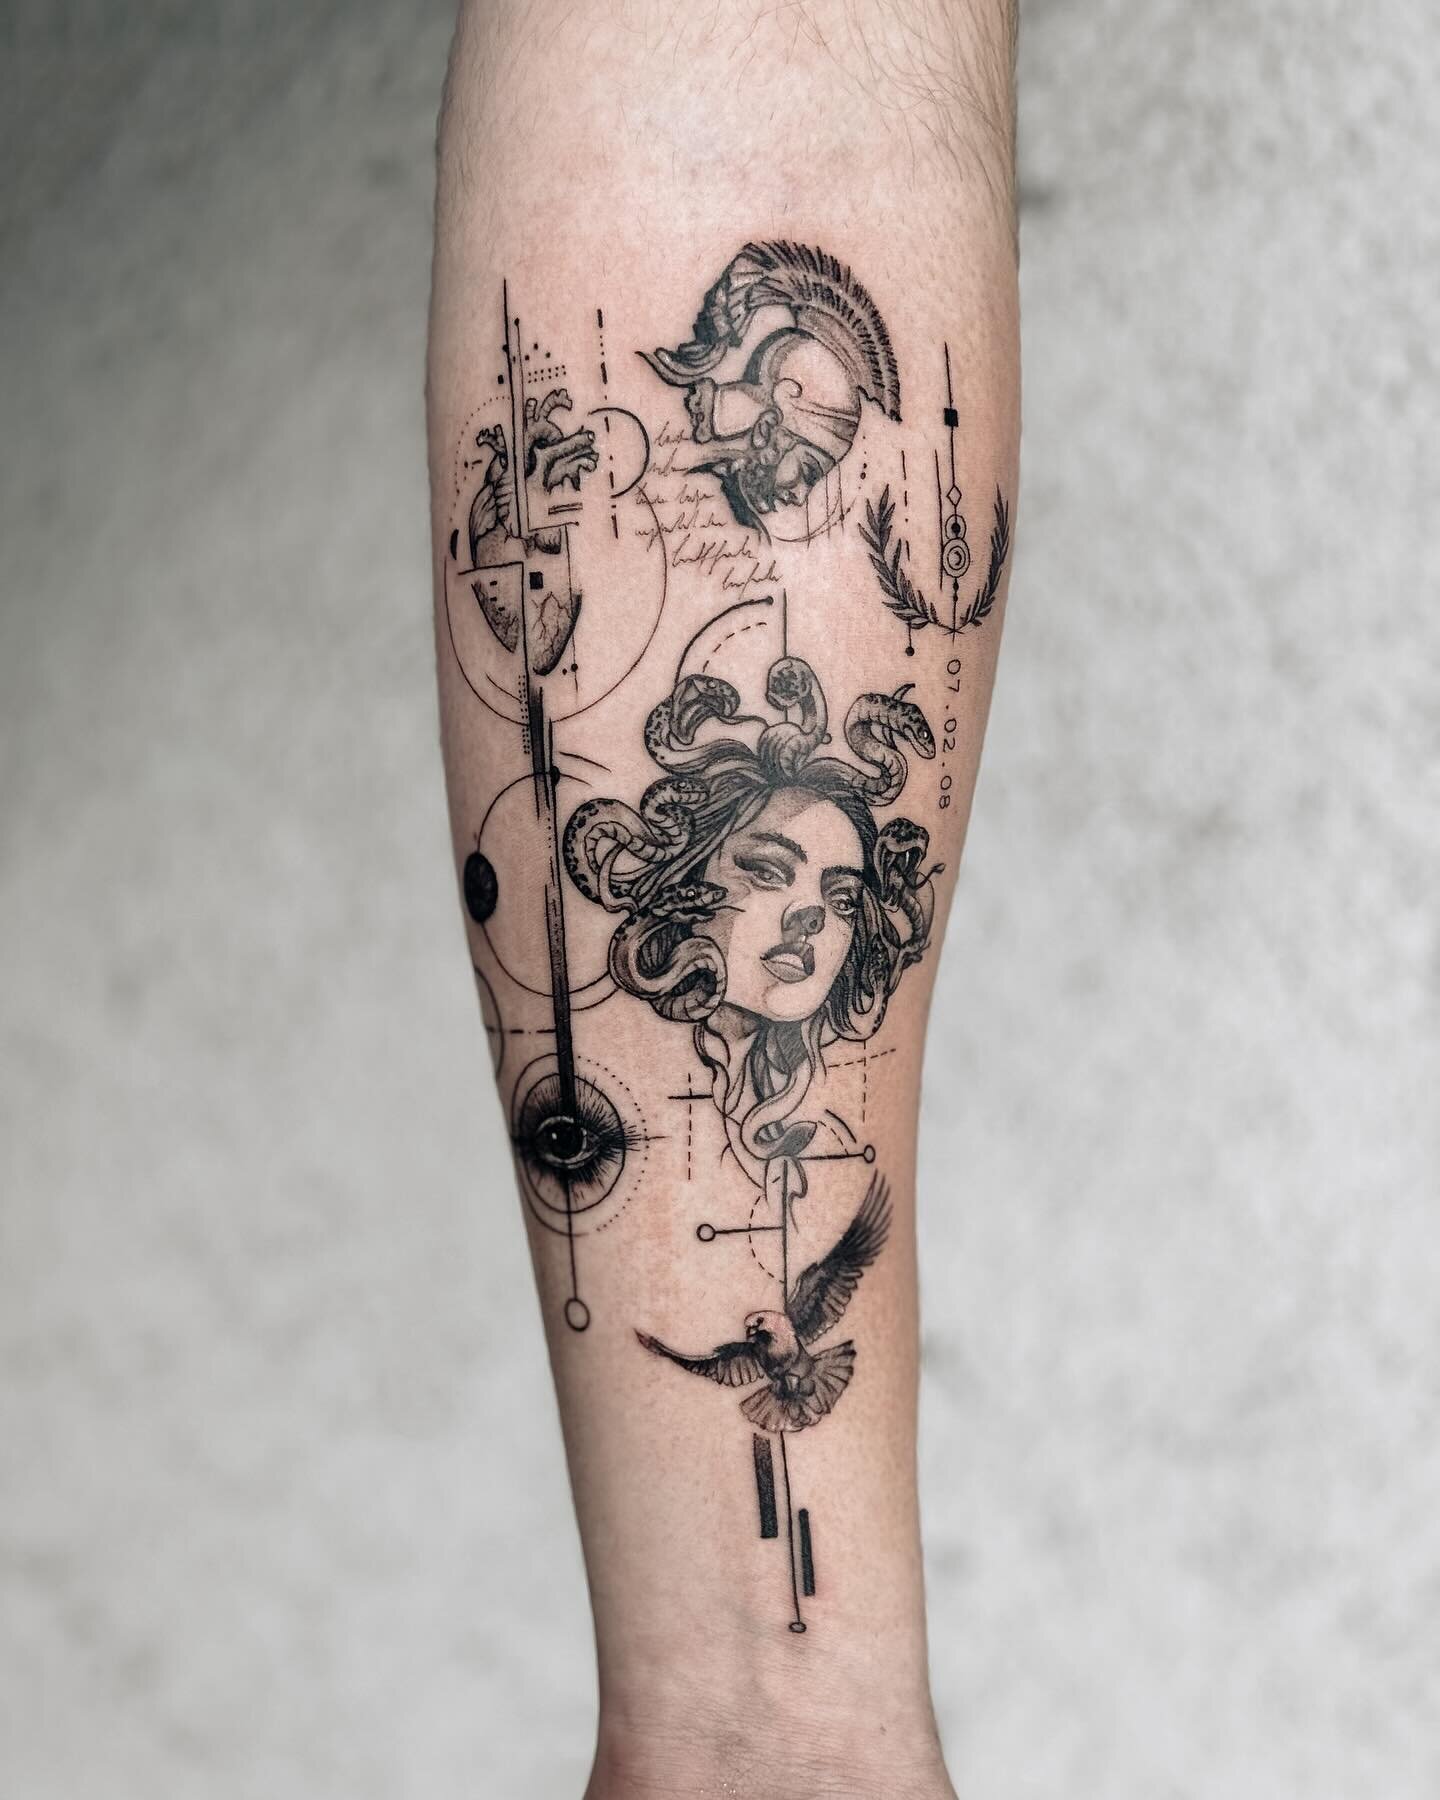 Geometric Tattoo
.
.
.
#tattoo #tattoos #tattooartist #ink #inked #tattooed #tattooideas #birsfelden #basel #studio #switzerland #tattooformen #armtattoo #medusa #medusatattoo #snake #snaketattoo #geometrictattoo #dovetattoo #eyetattoo